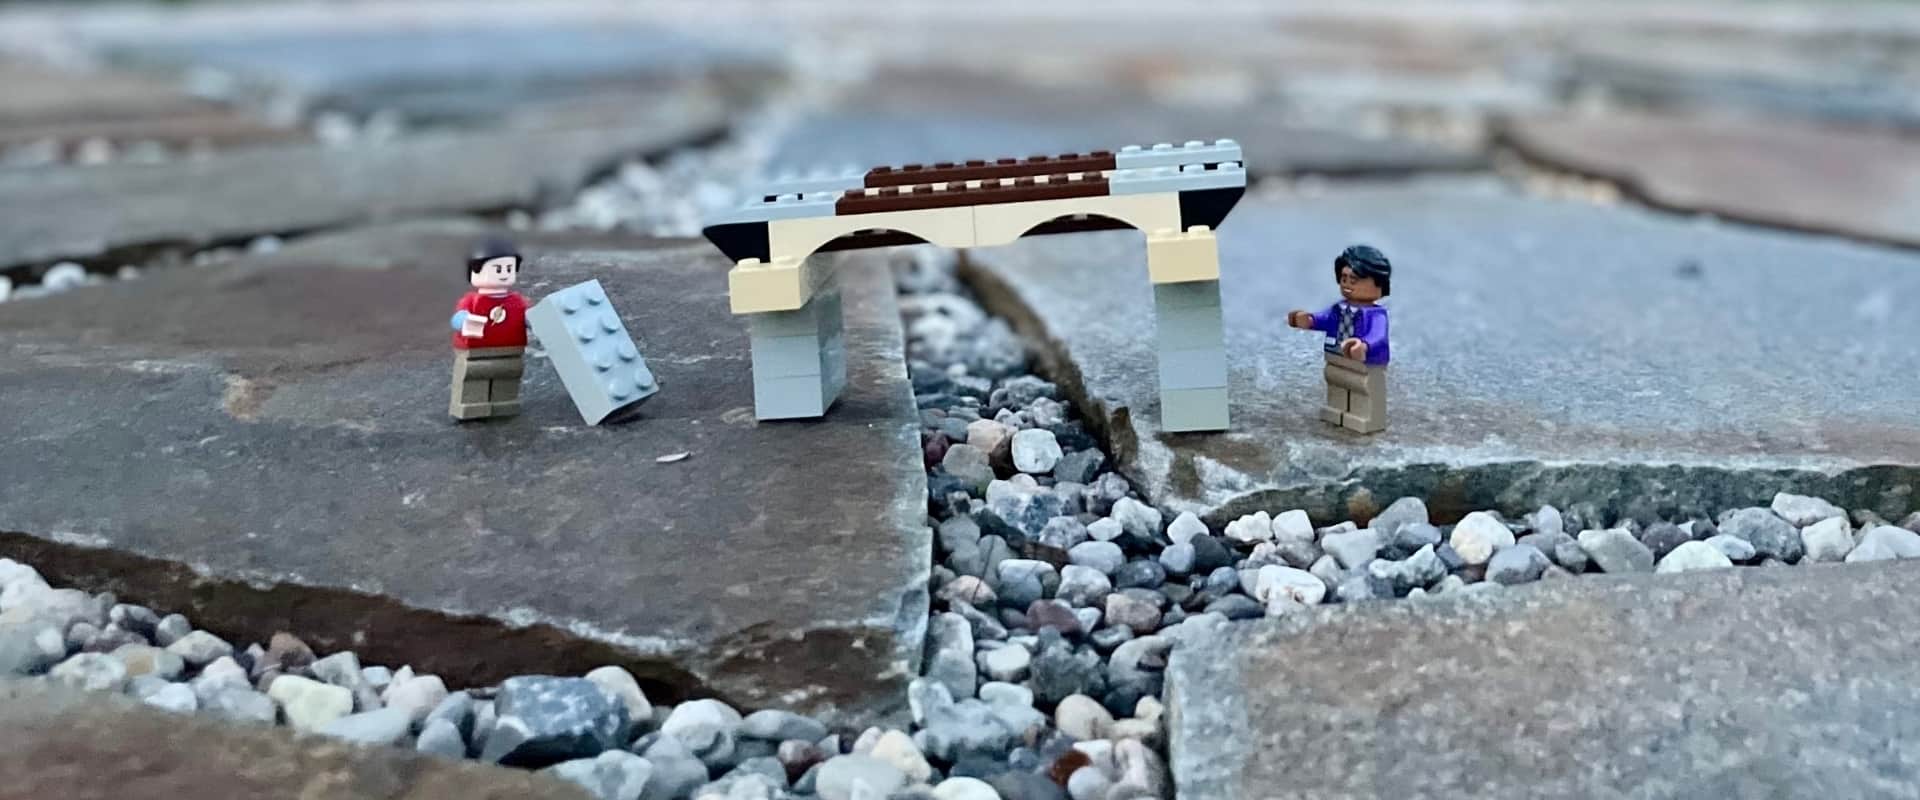 Deux bonhommes LEGO à côté d'un pont en LEGO sur des pierres à l'extérieur.